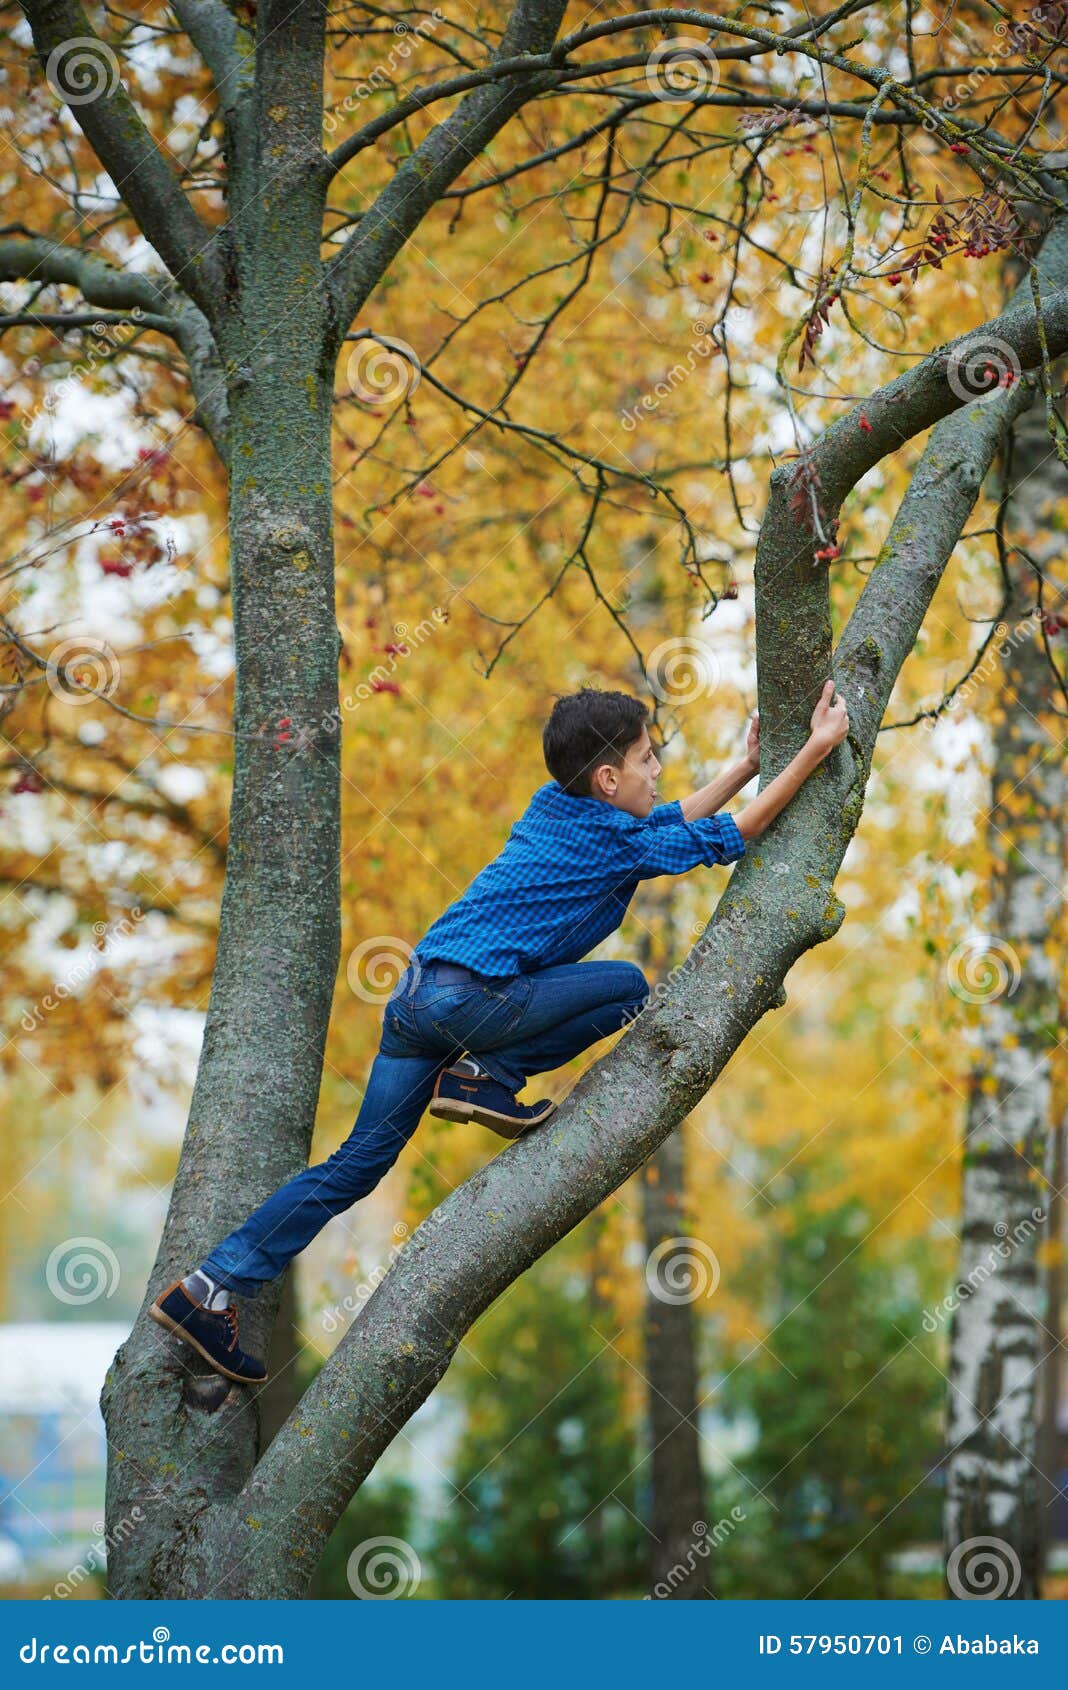 Взбирается по березке. Карабкаться на дерево. Мальчик на дереве. Взбираться на дерево. Парень залез на дерево.